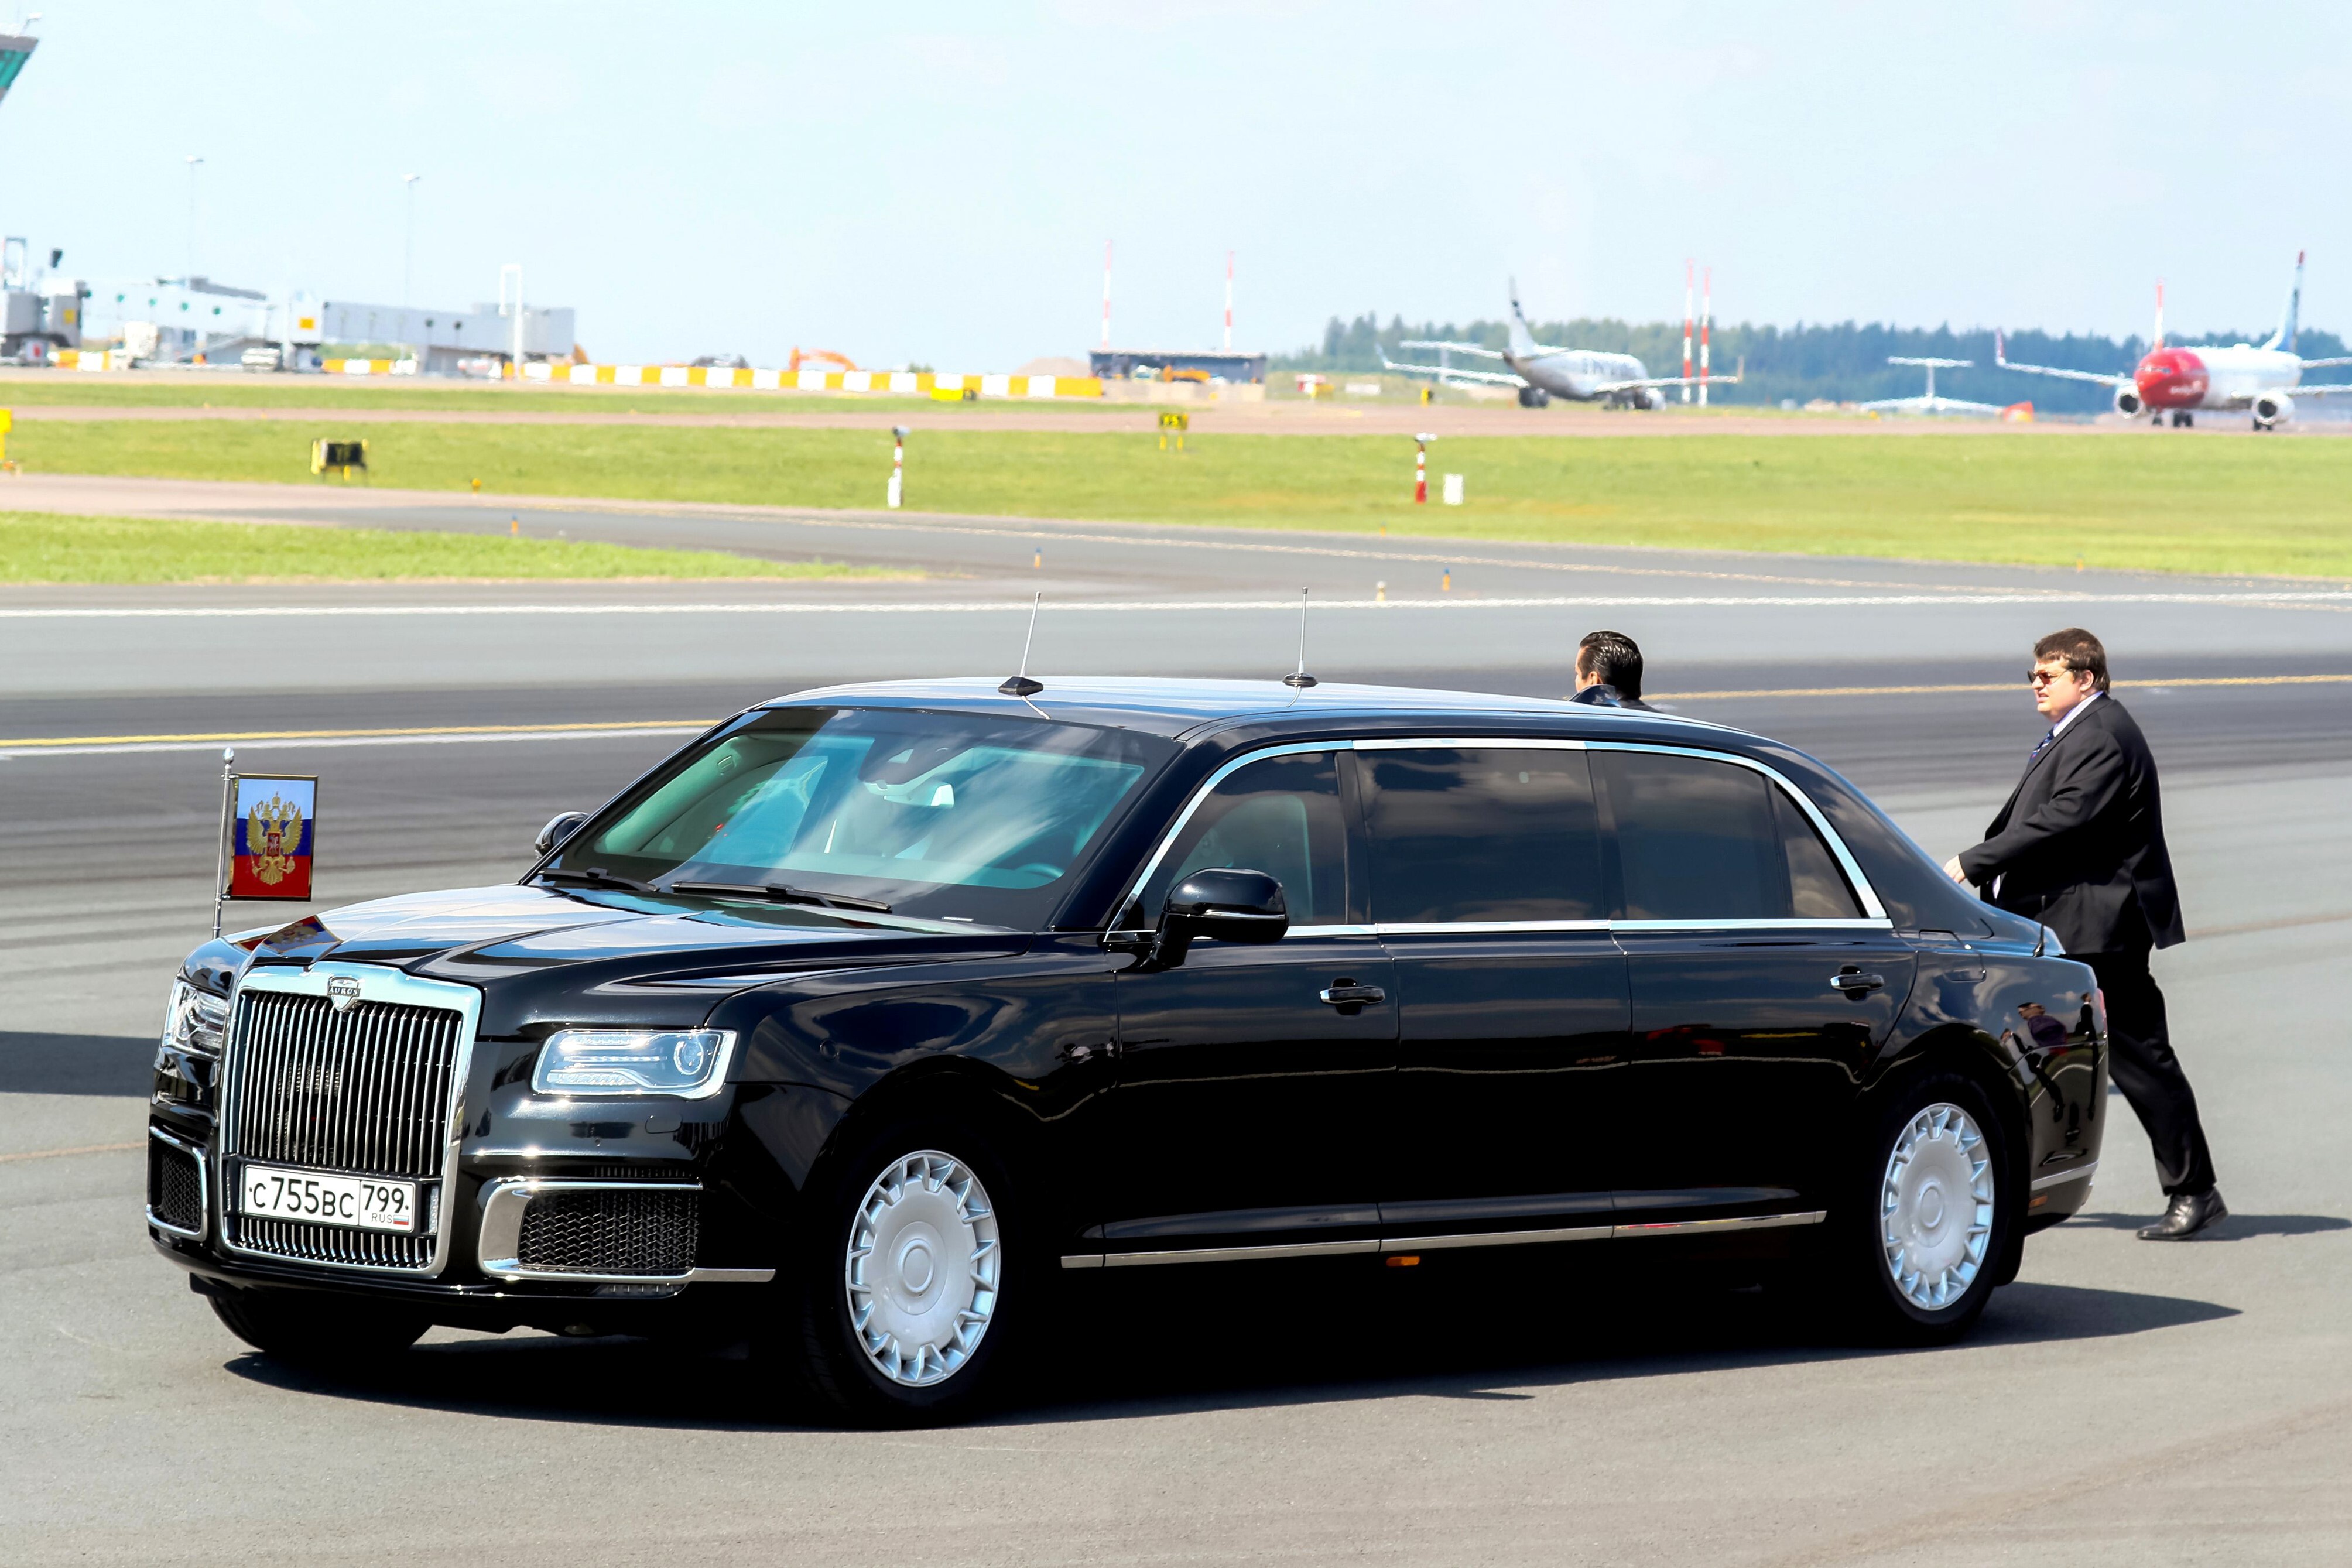 Президентский автомобиль. Aurus-41231 «Сенат». Президентская машина Аурус. Лимузин президента Путина Аурус. Машина президента Аурус Сенат.